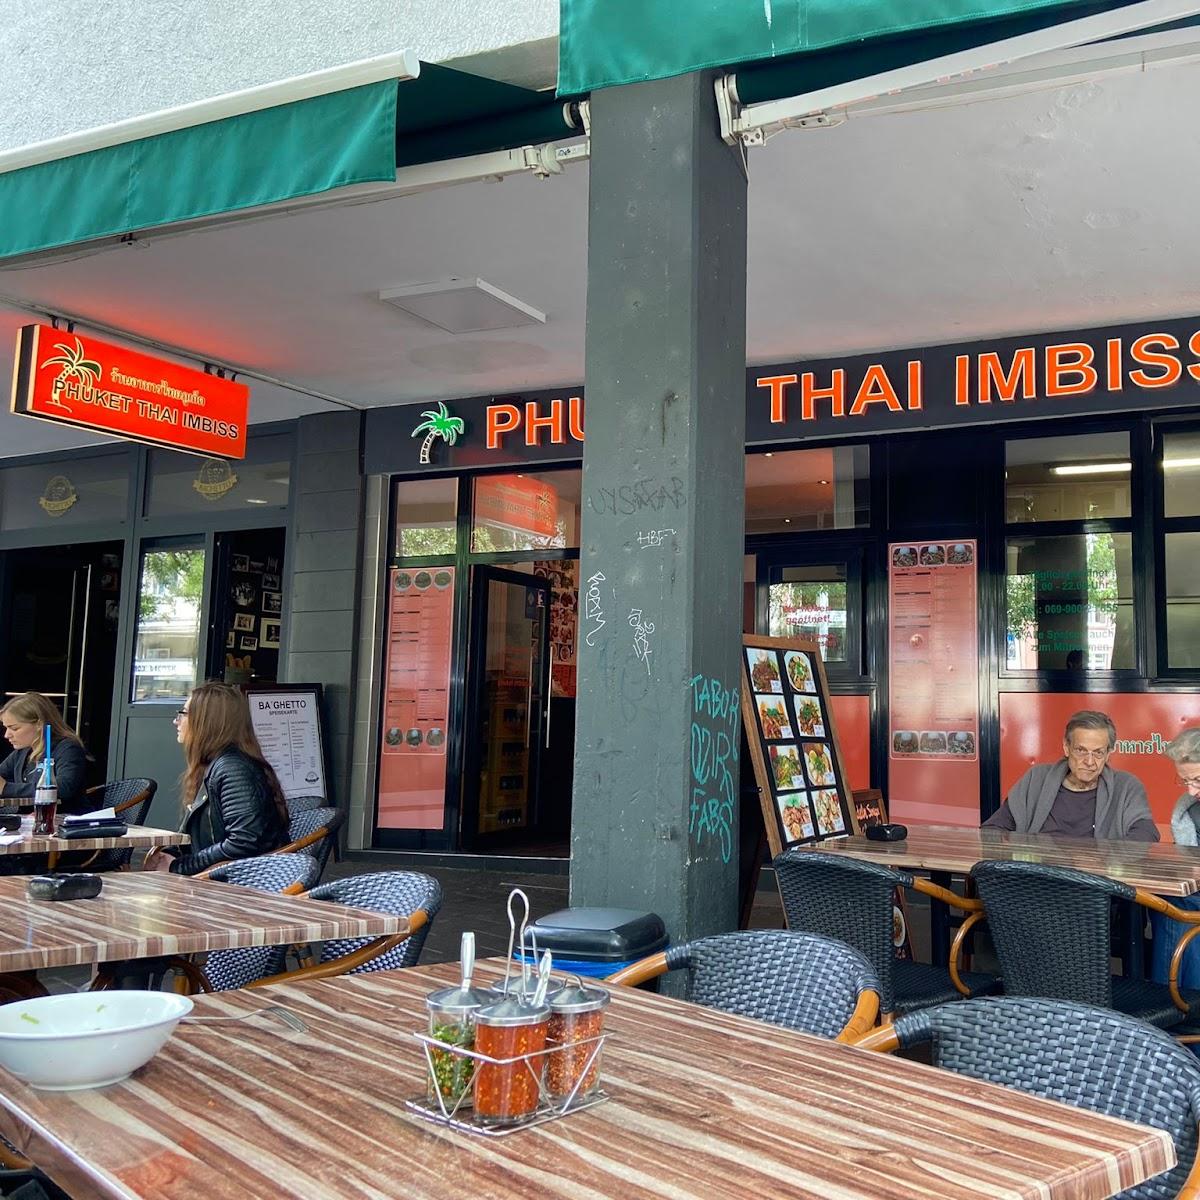 Restaurant "Phuket Thai Imbiss" in Frankfurt am Main